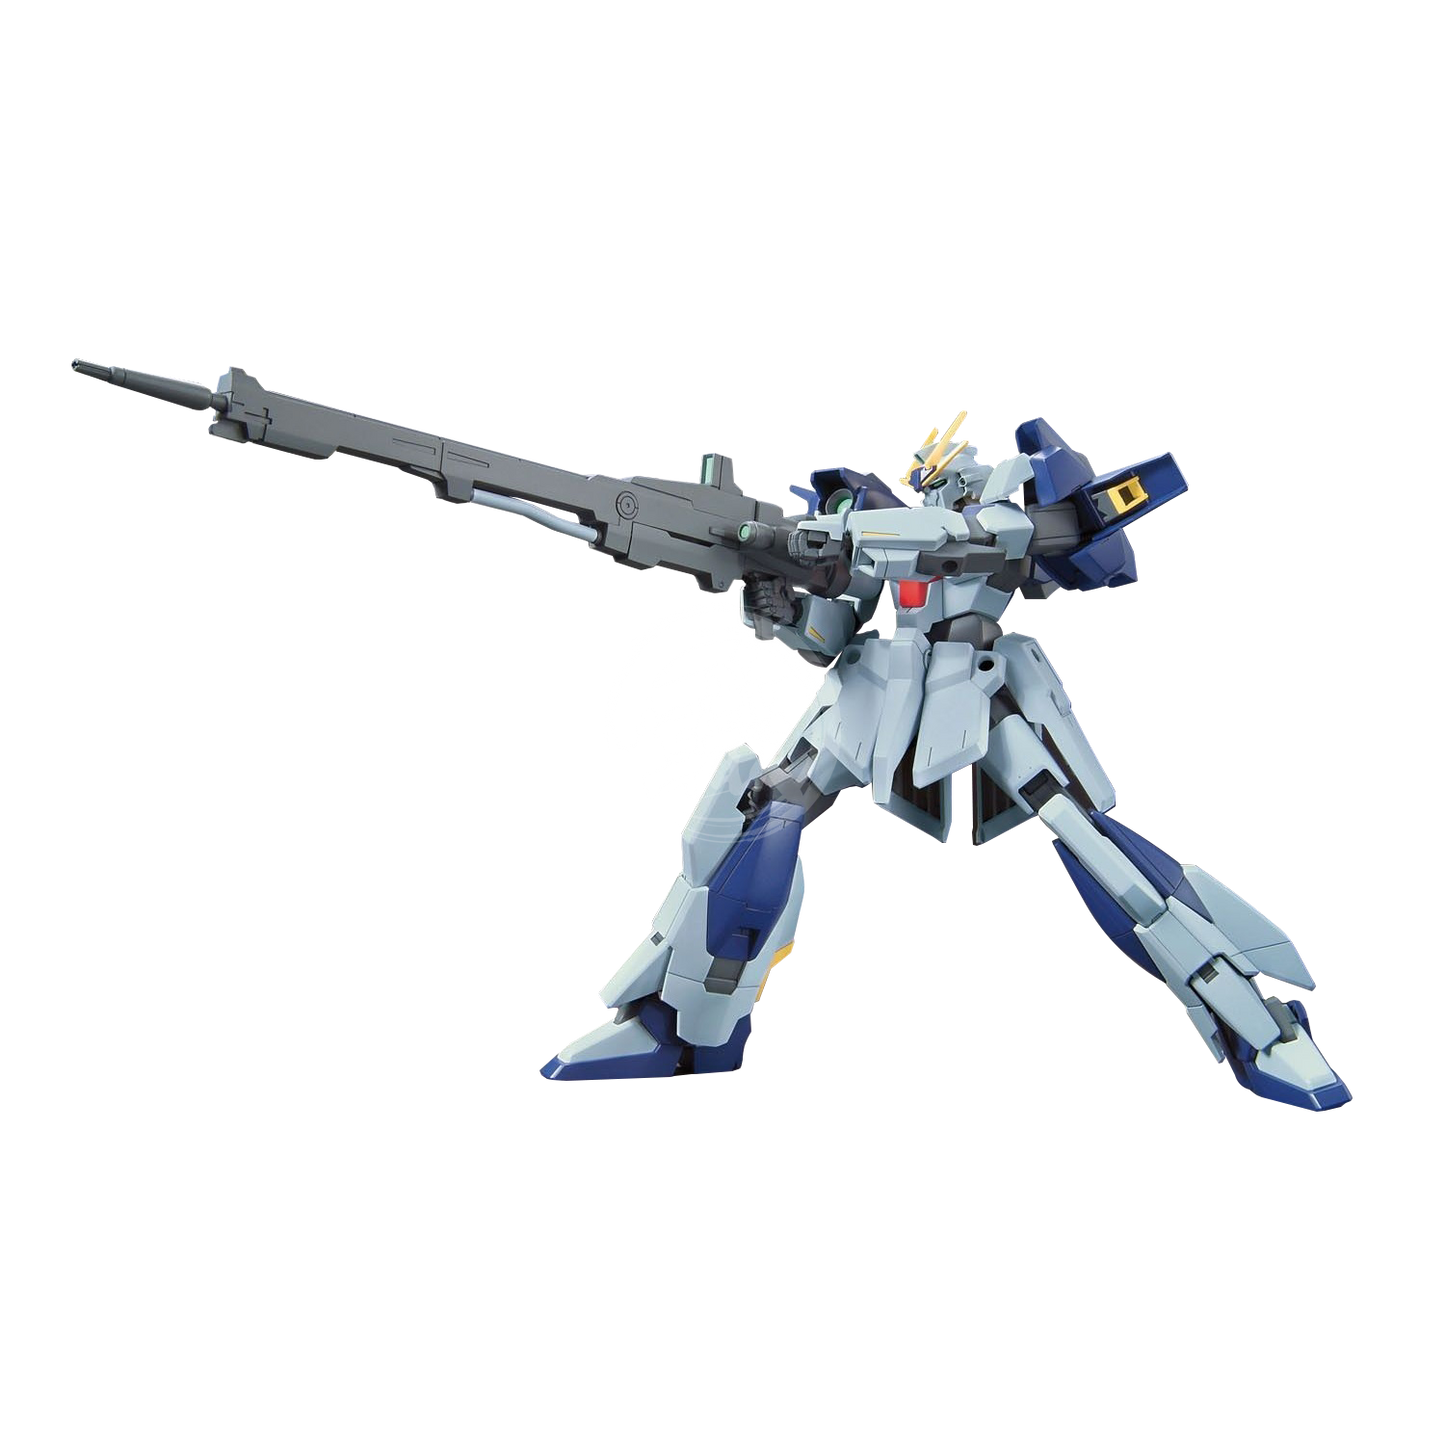 Bandai - HG Lightning Gundam - ShokuninGunpla